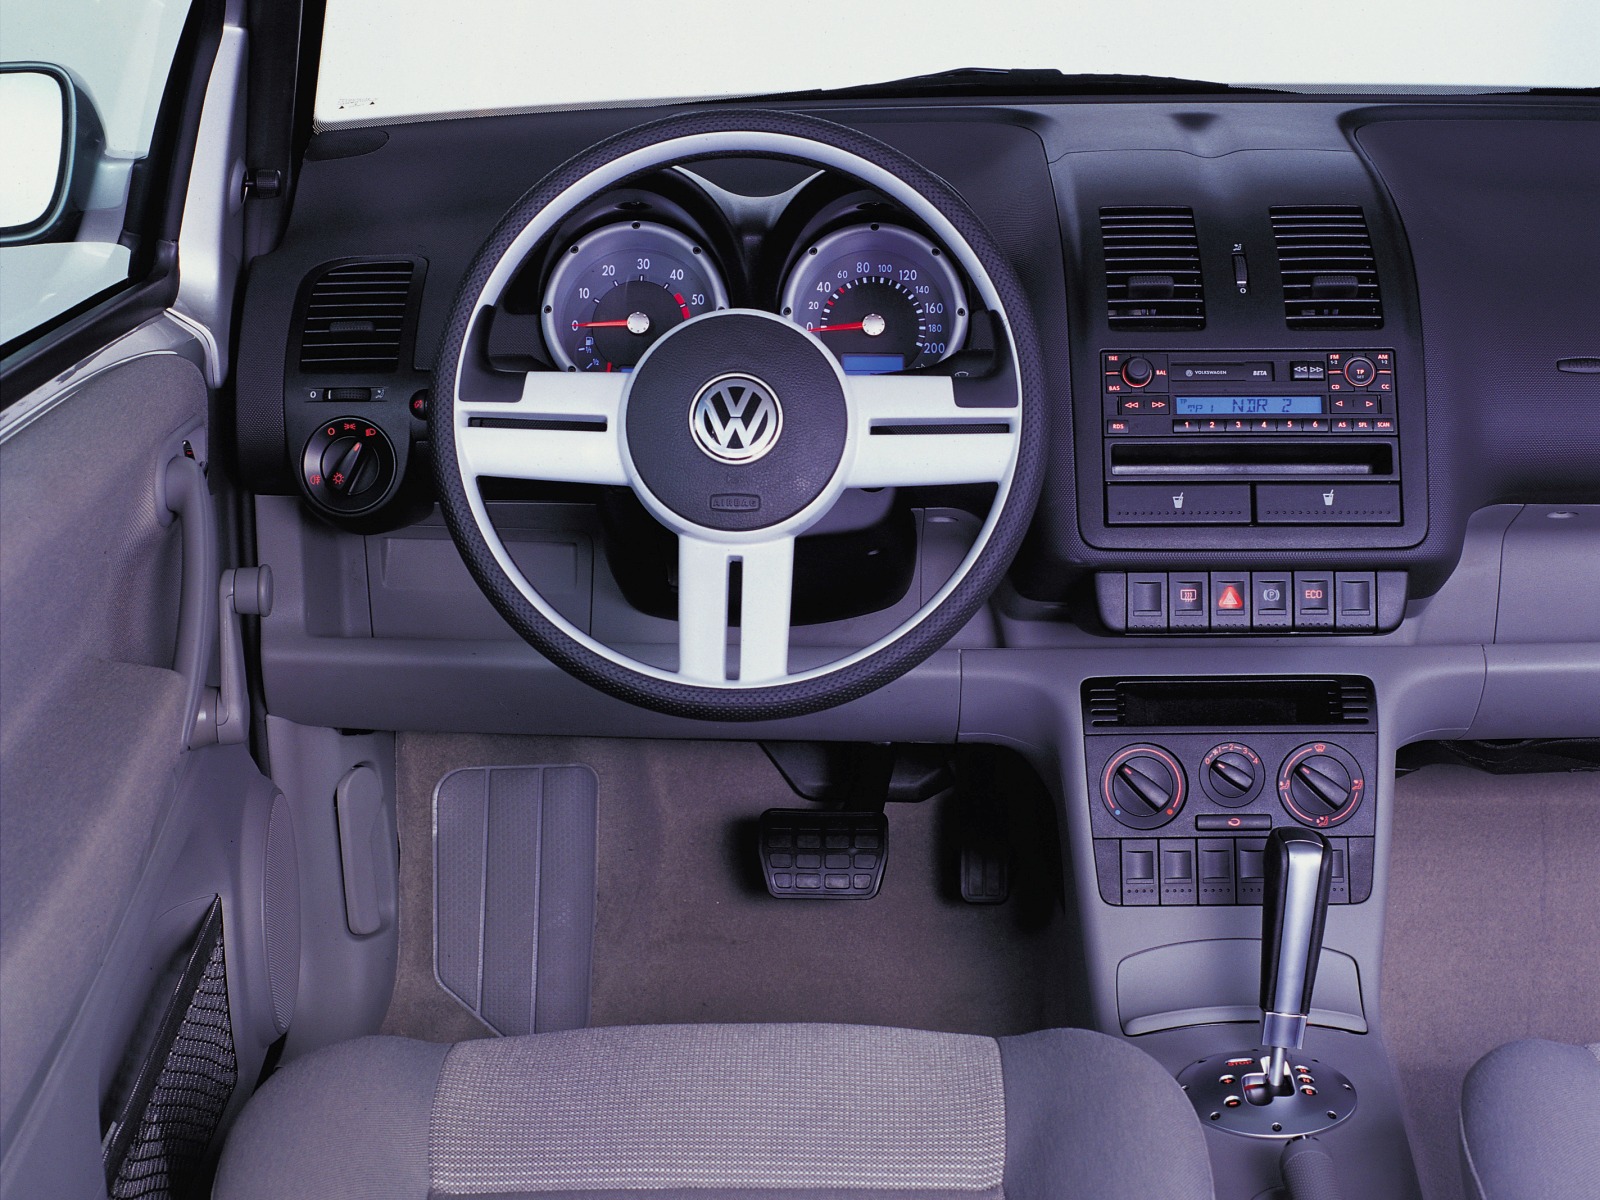 VW Lupo 3L TDI spotreba menej ako 3 litre - VW jazdenka nepoteší Putina ani Brusel!